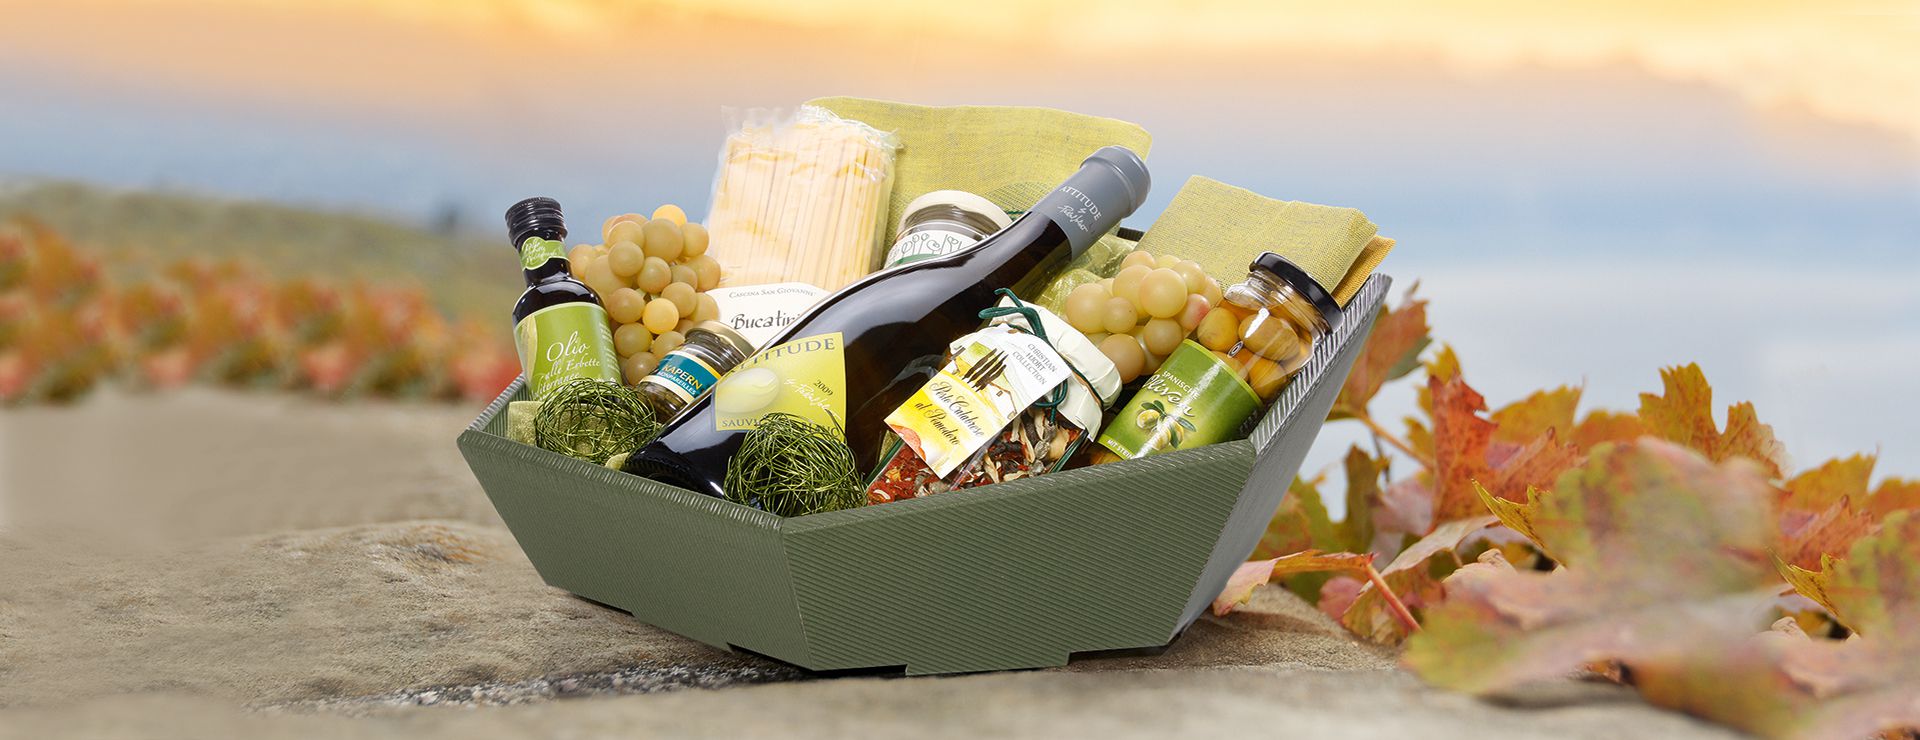 Panier-cadeau hexagonal en carton ondulé avec biseau tourné vers l’avant dedans du vin blanc et des olives.